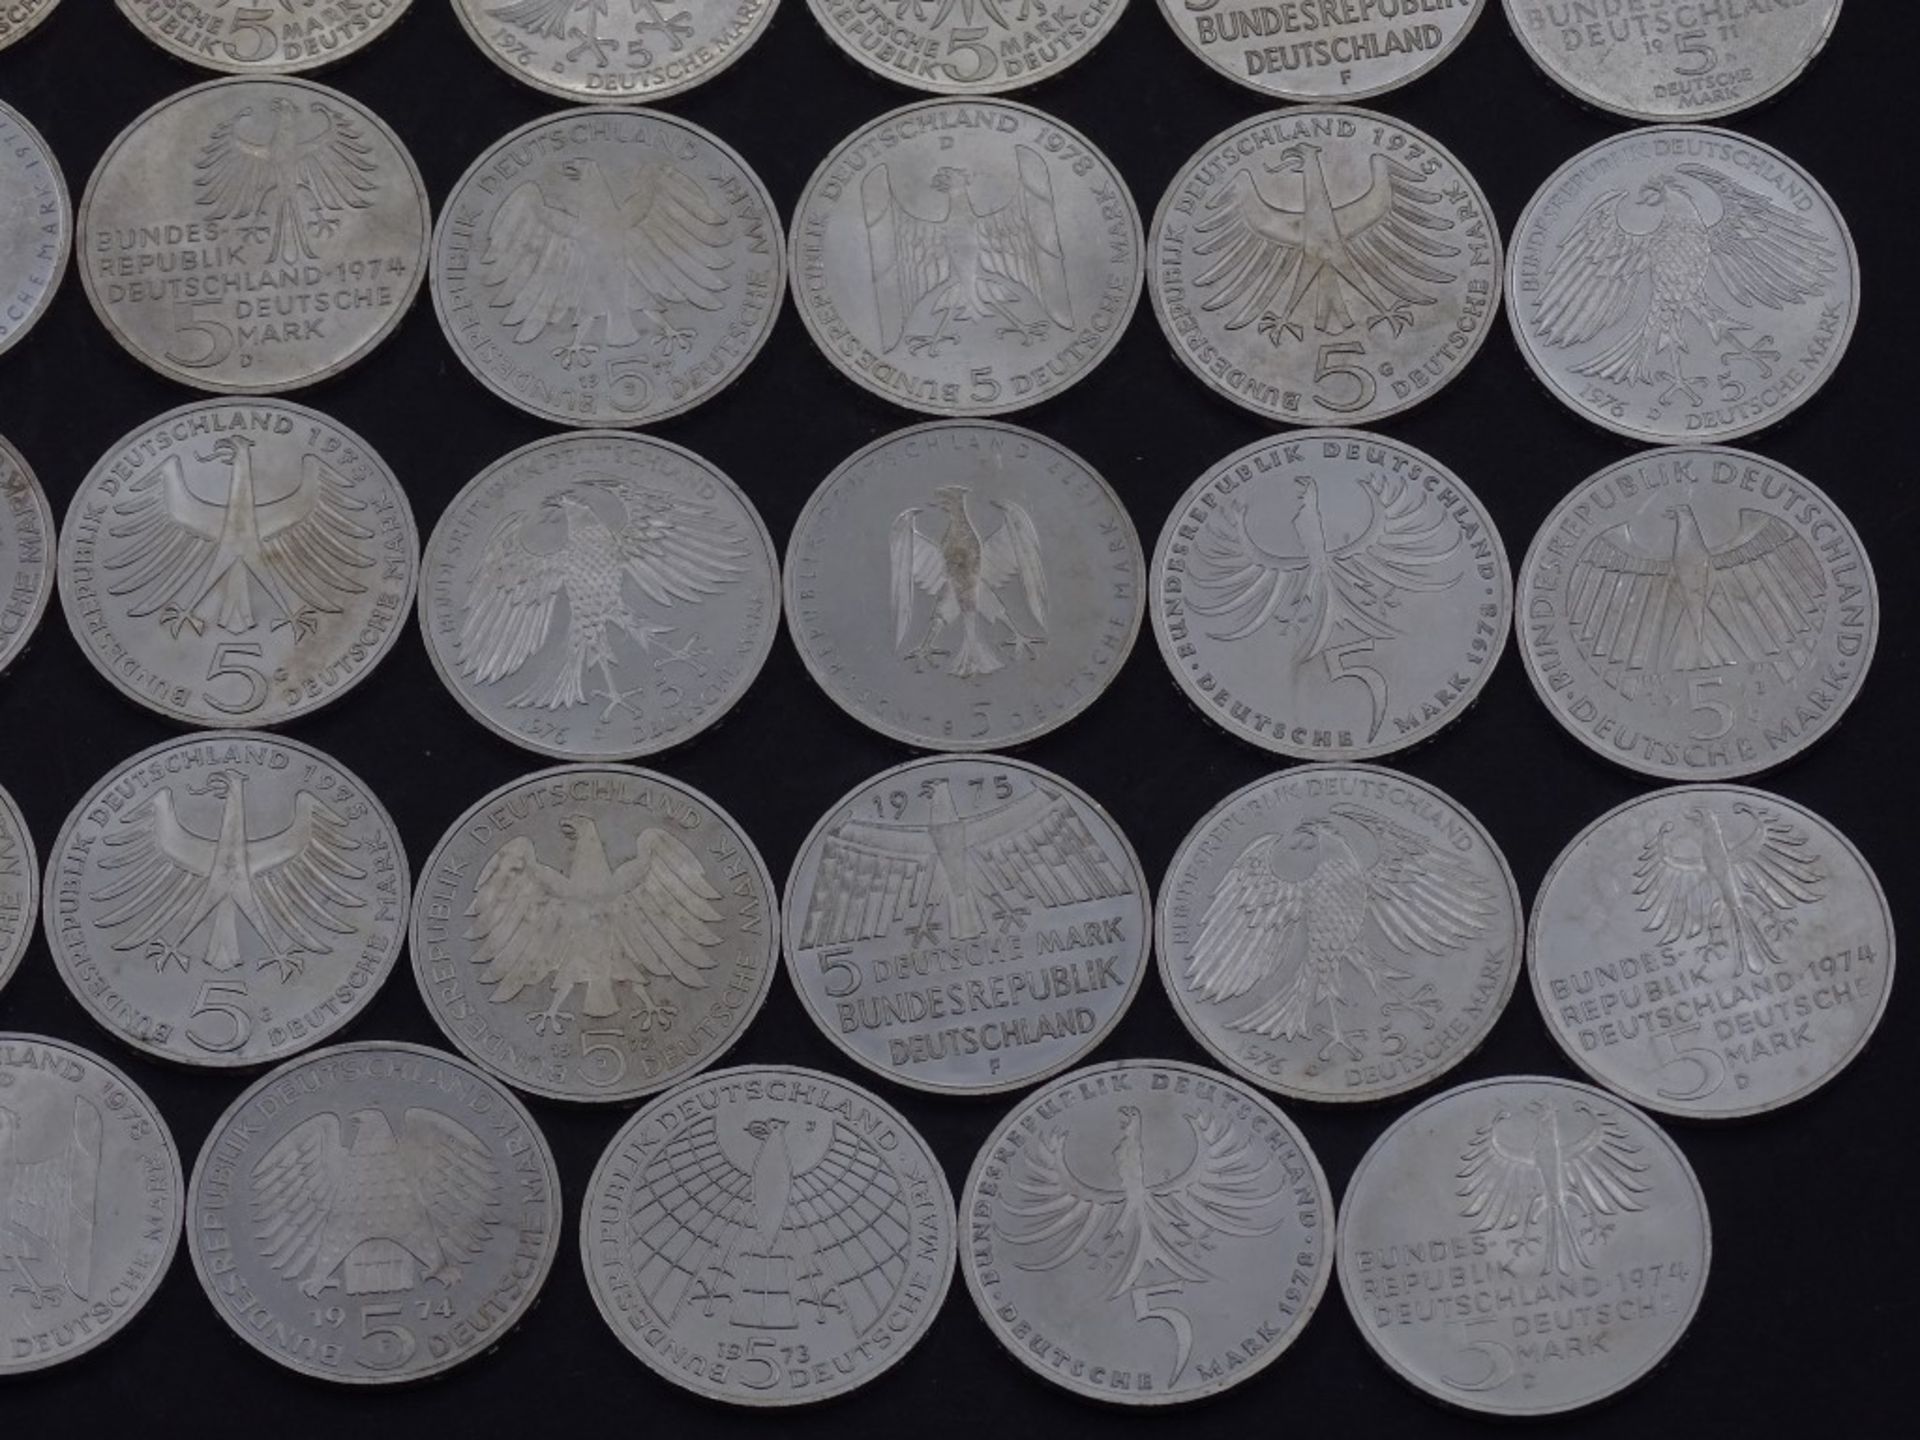 40x 5 DM Münzen,Silber,ges. 200 Deutsche Mar - Bild 4 aus 10